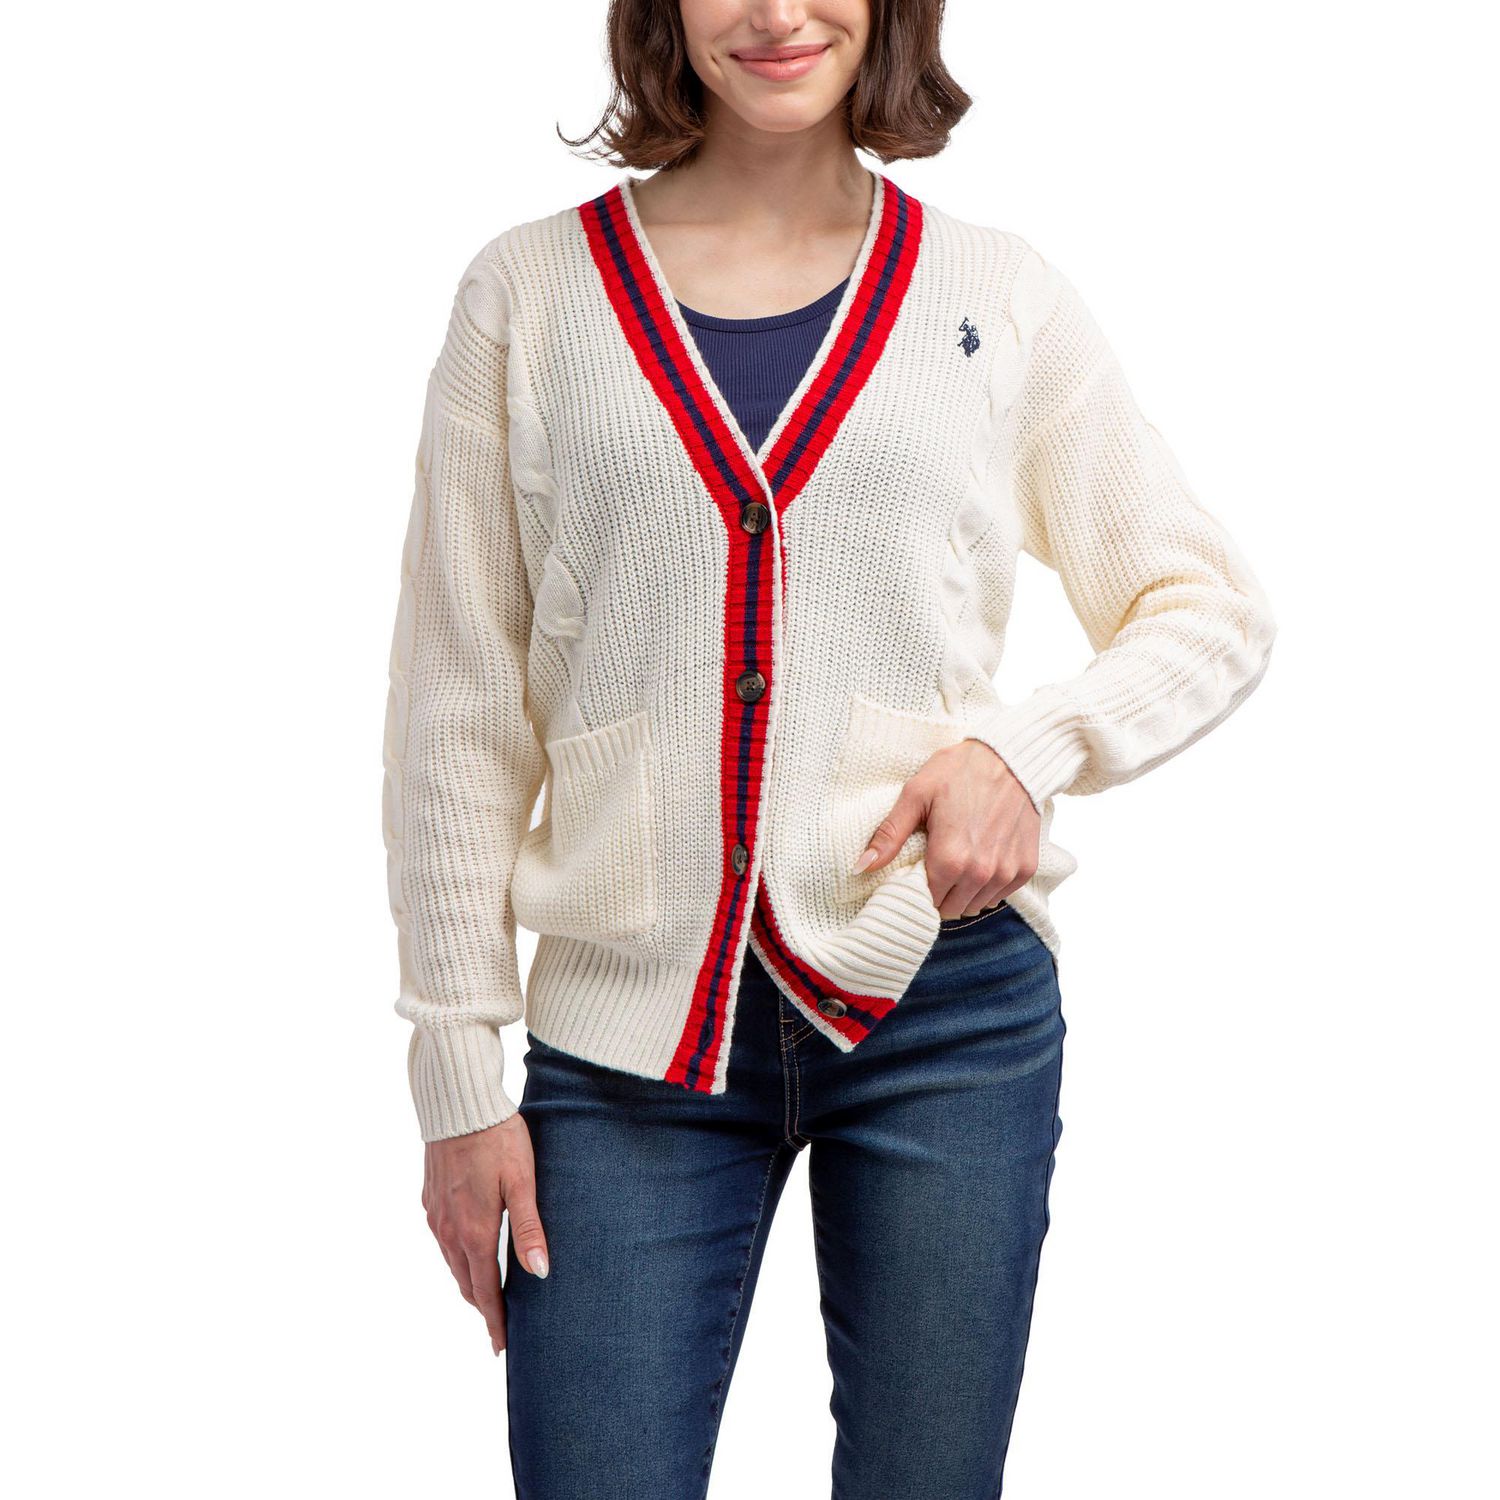 Women's Knitwear: Sweaters, Polos, Cardigans, Tops